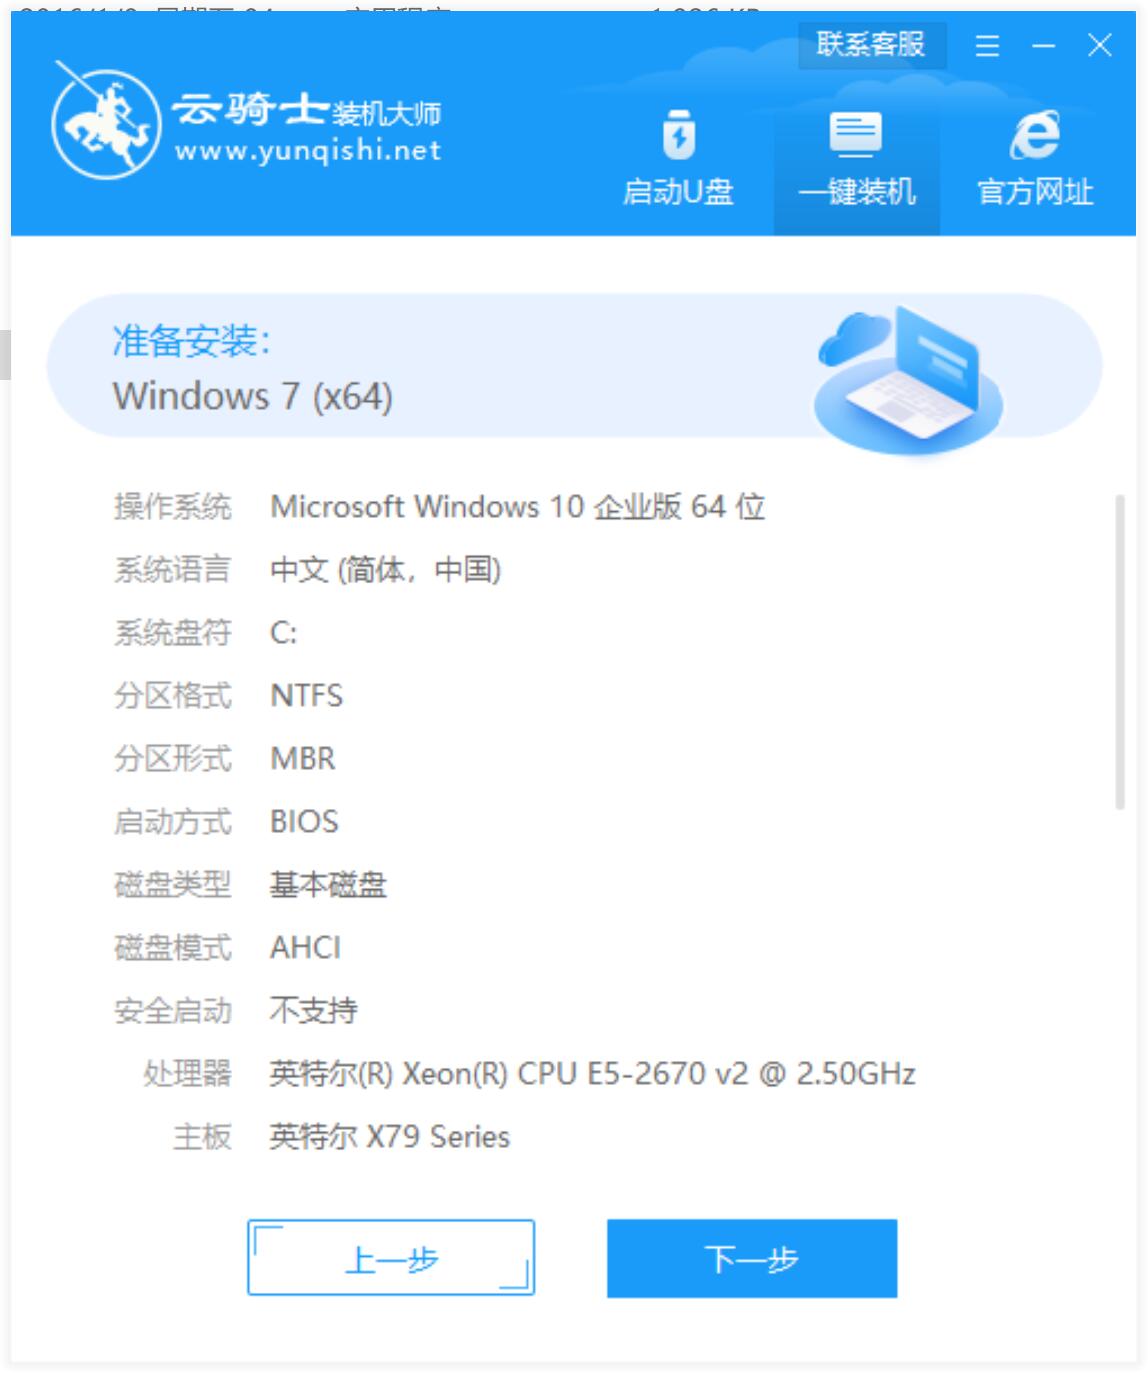 新版技术员联盟系统 GHOST Window7 x64  纯净版系统镜像文件下载 V2021.02(6)